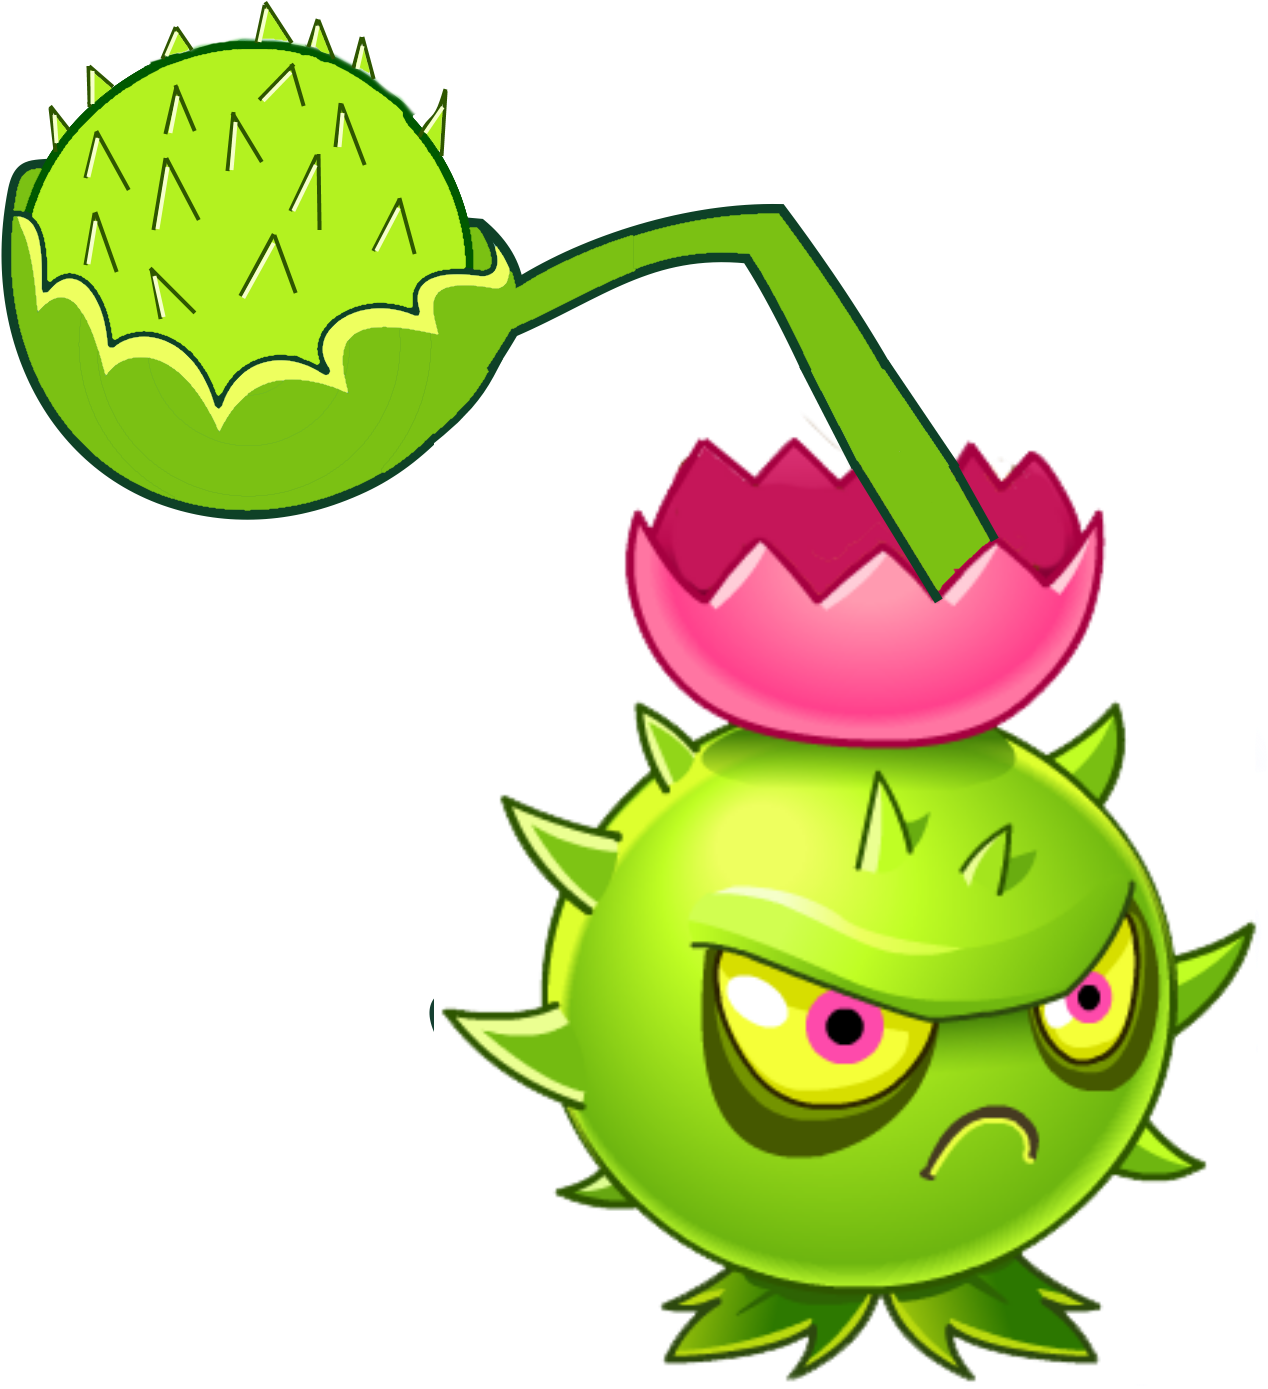 Cactus-pult - Plants Vs. Zombies (1385x1461)